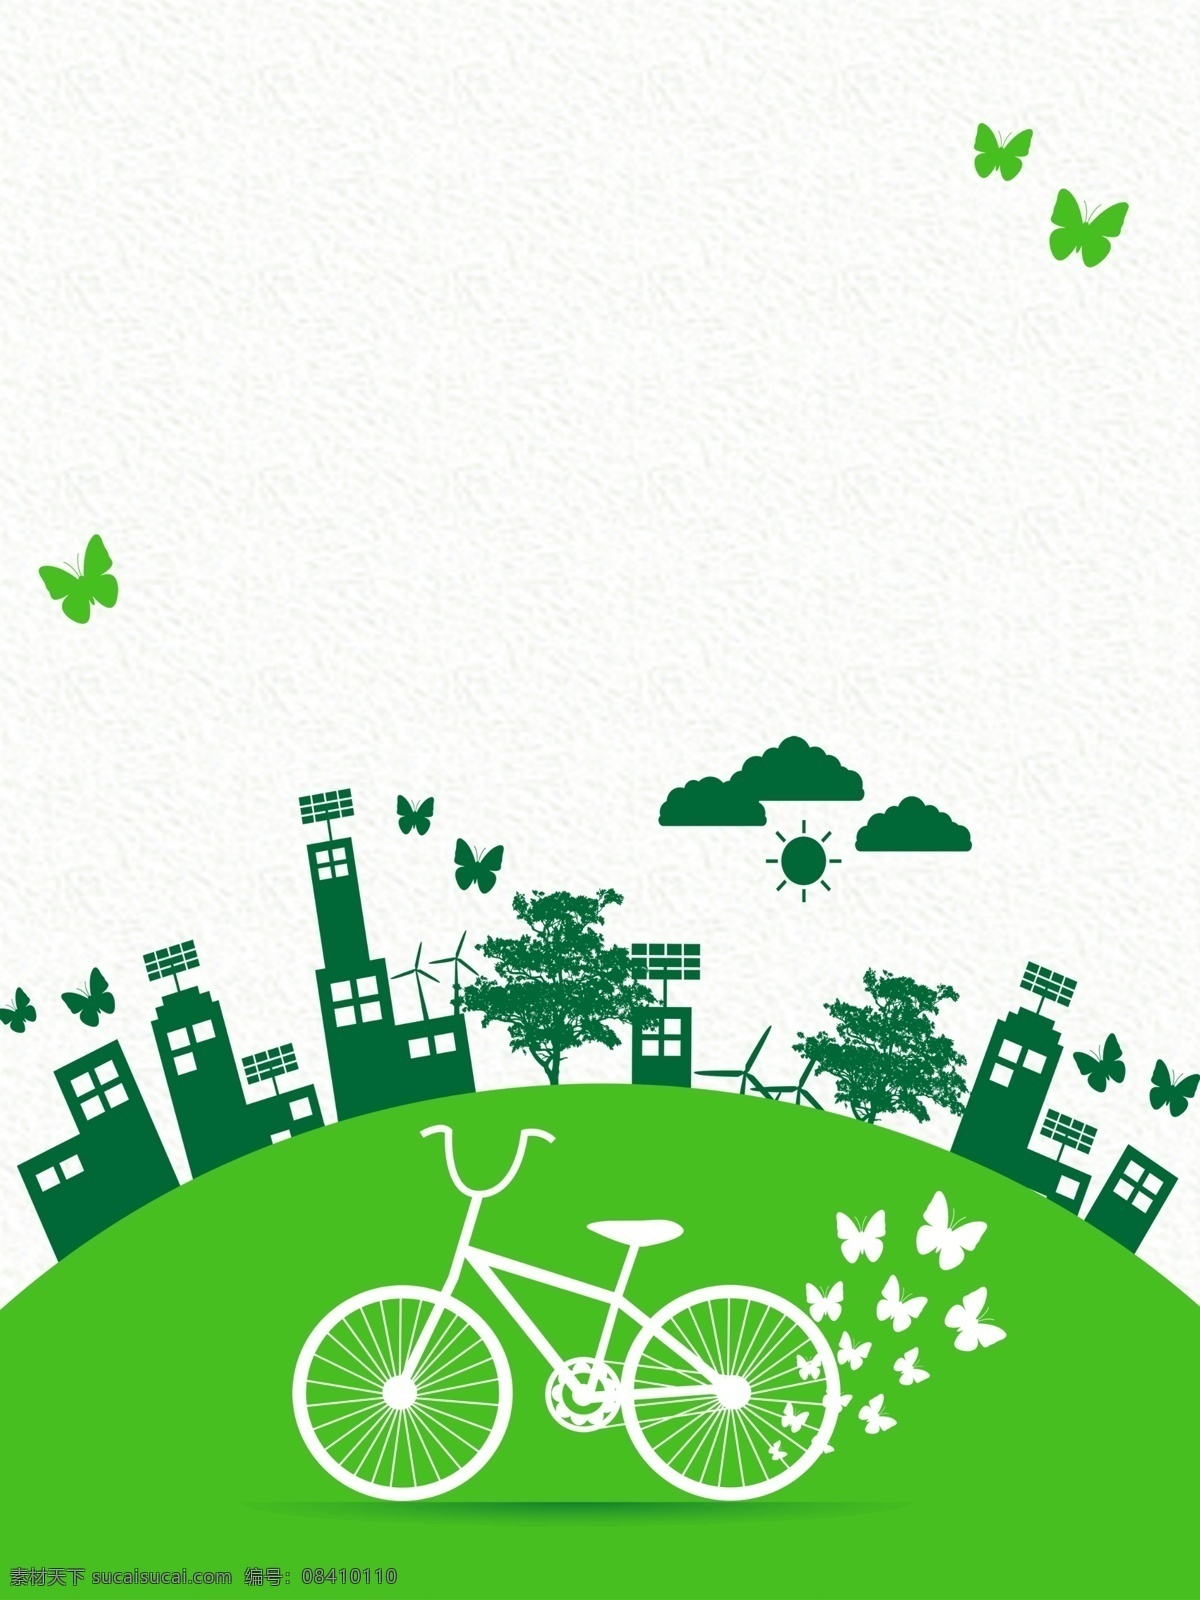 低 碳 绿色 出行 公益 海报 低碳 环保 节能 绿色城市 简画 插画 保护环境 和谐社会 公益广告 分层